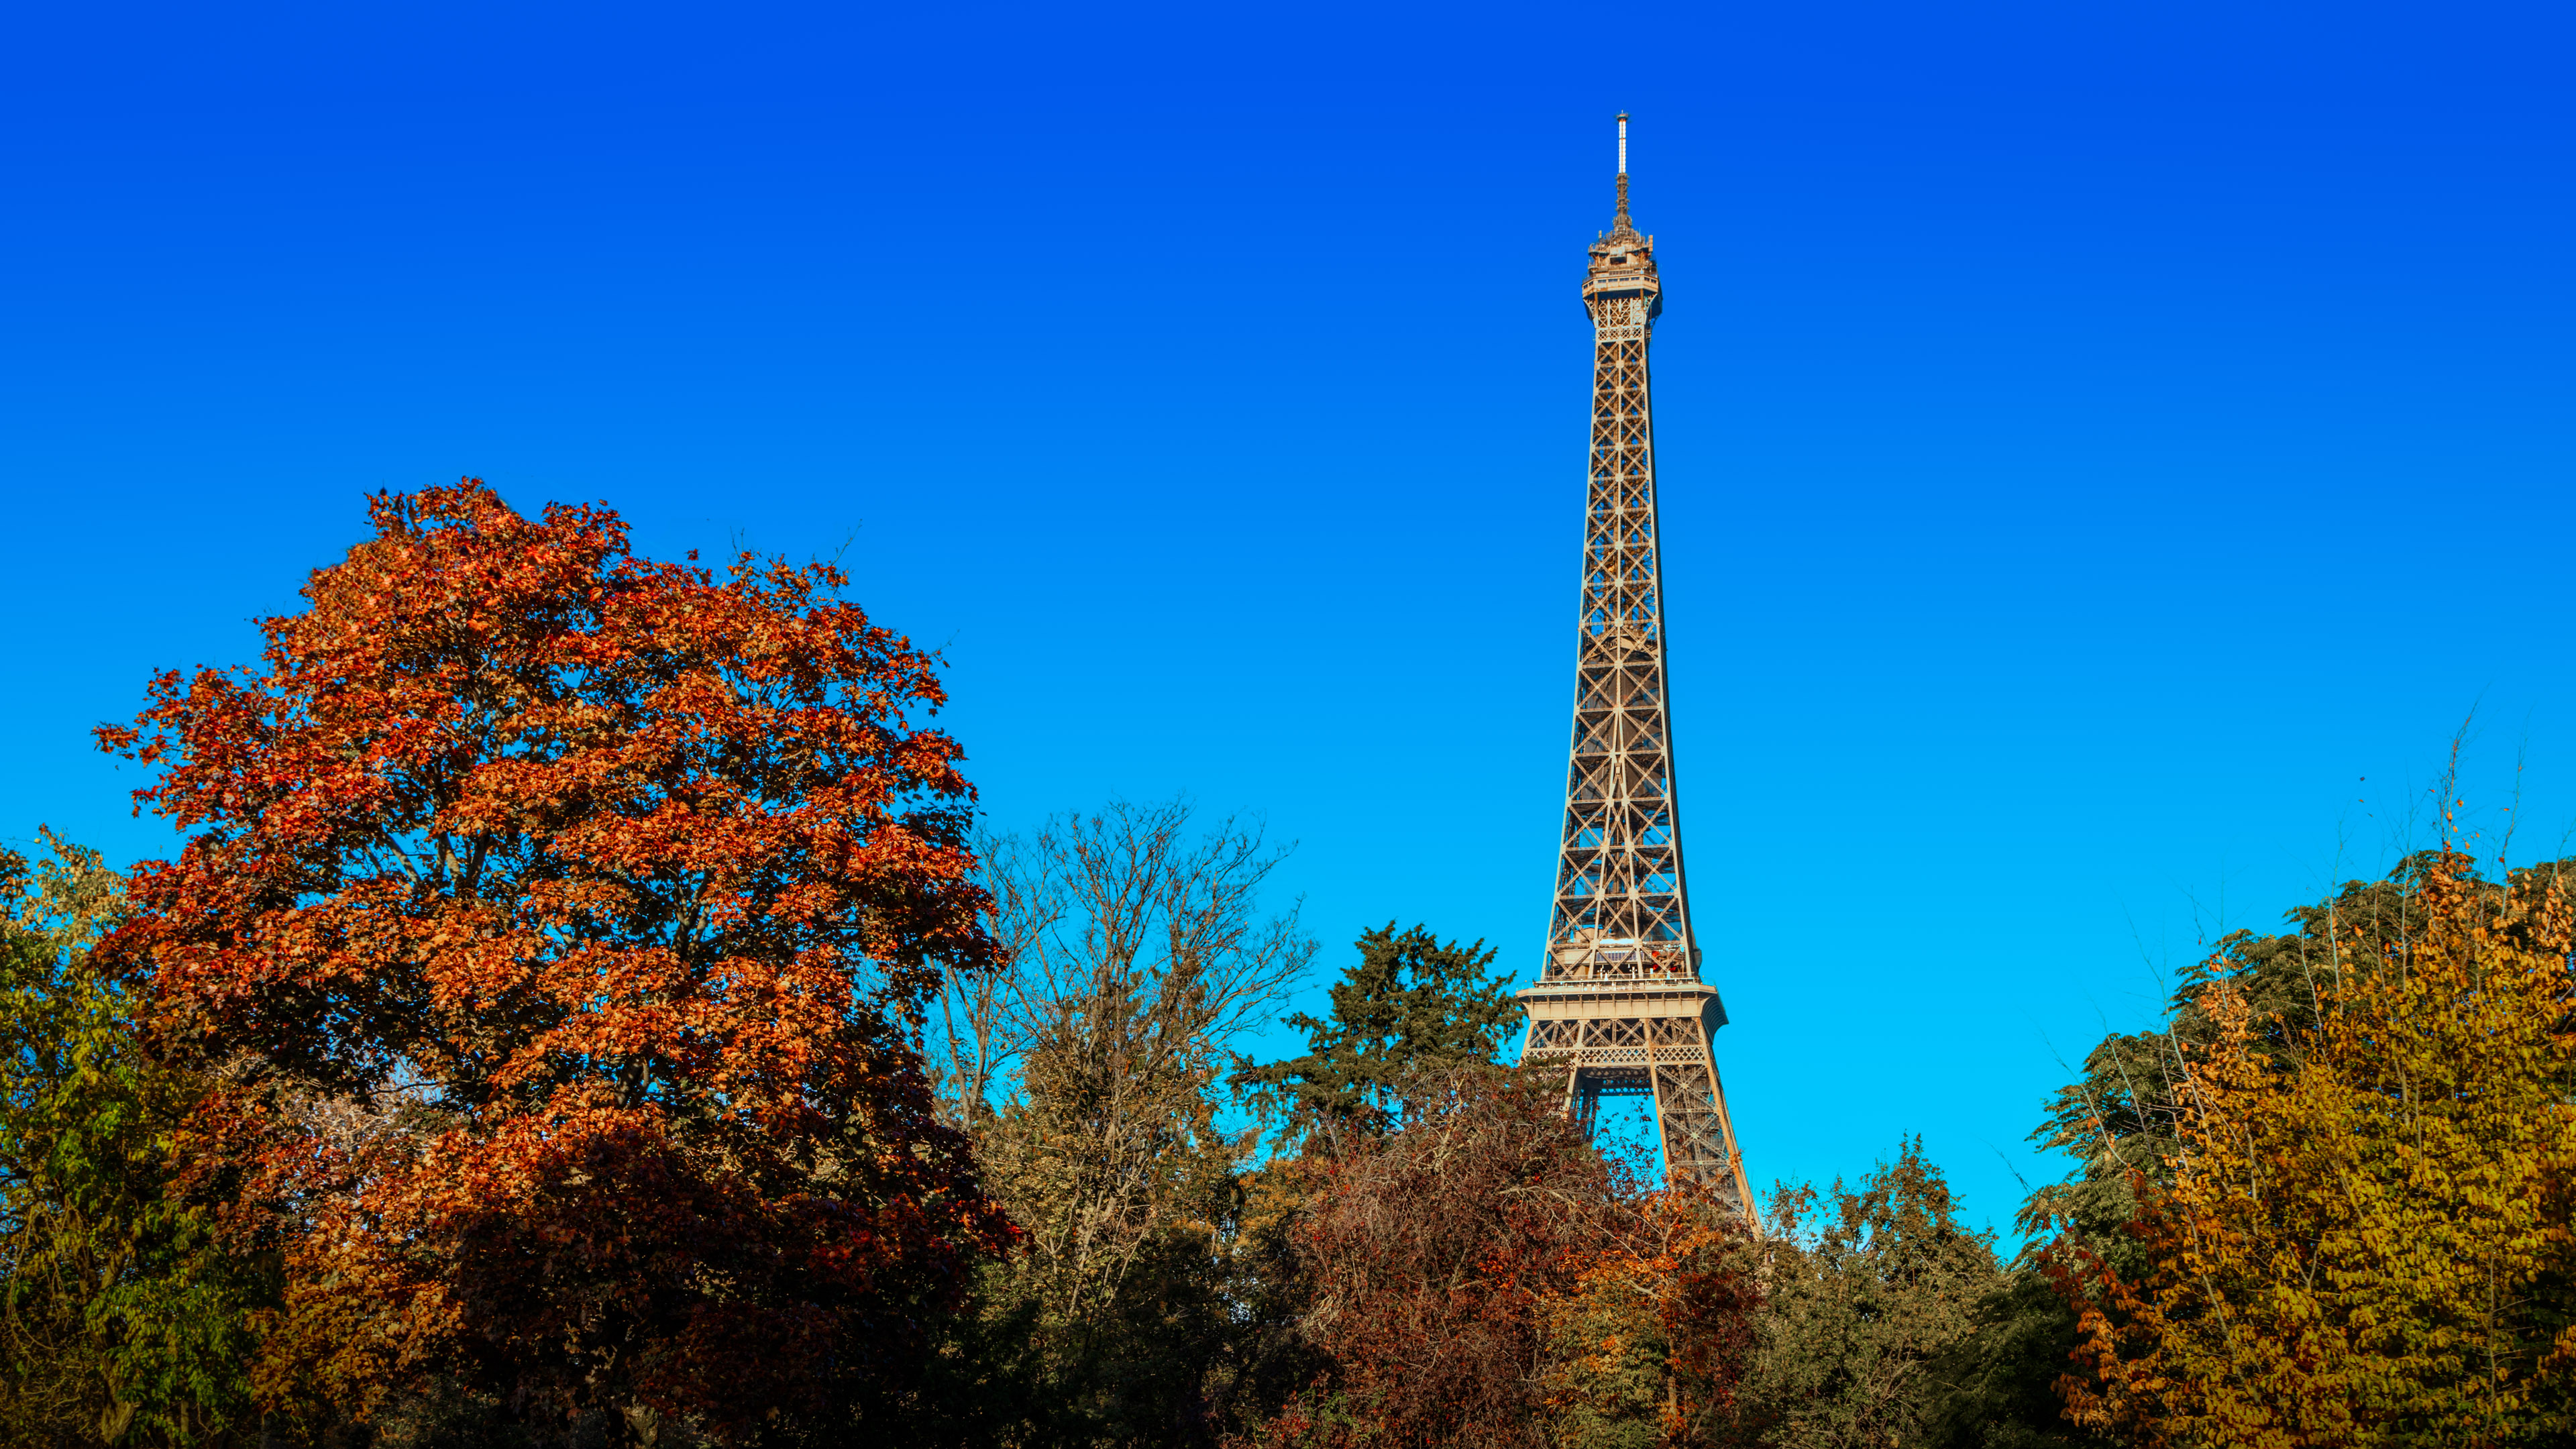 Transformez votre PC avec notre fond d'écran de bureau gratuit, mettant en valeur la tour Eiffel emblématique à Paris, symbole d'élégance et de brillance architecturale.